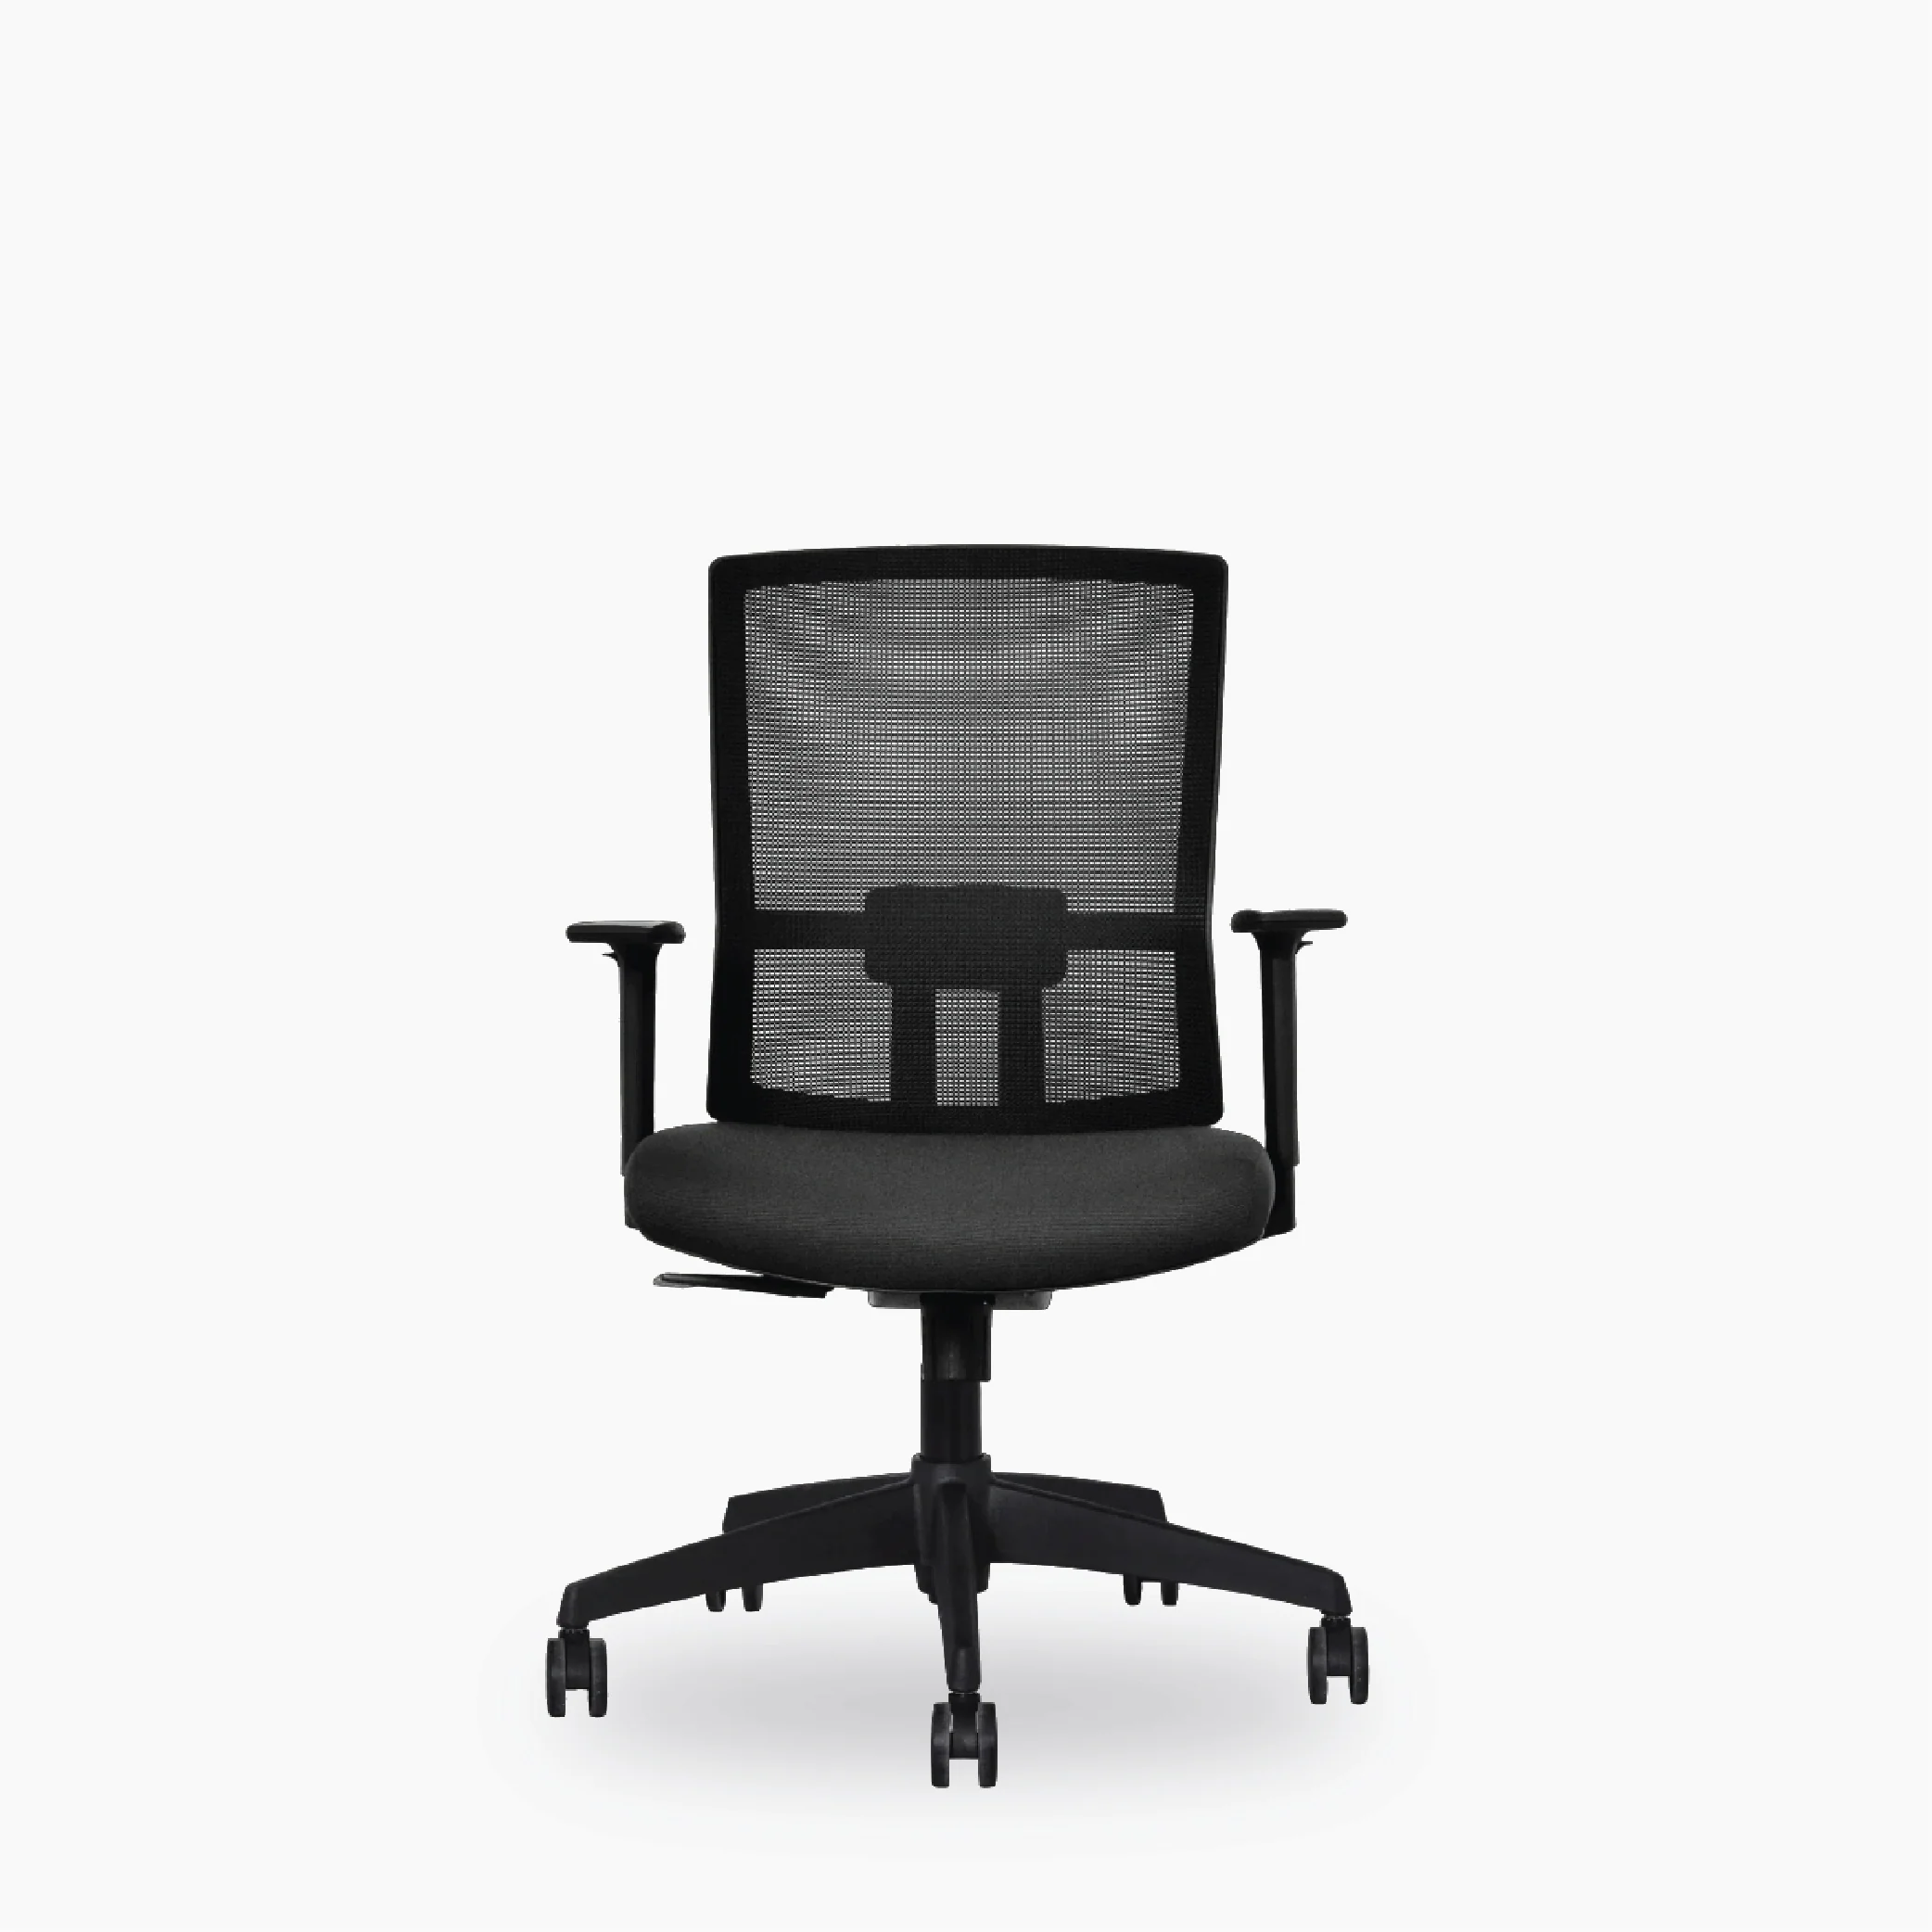 Versalink chair a2